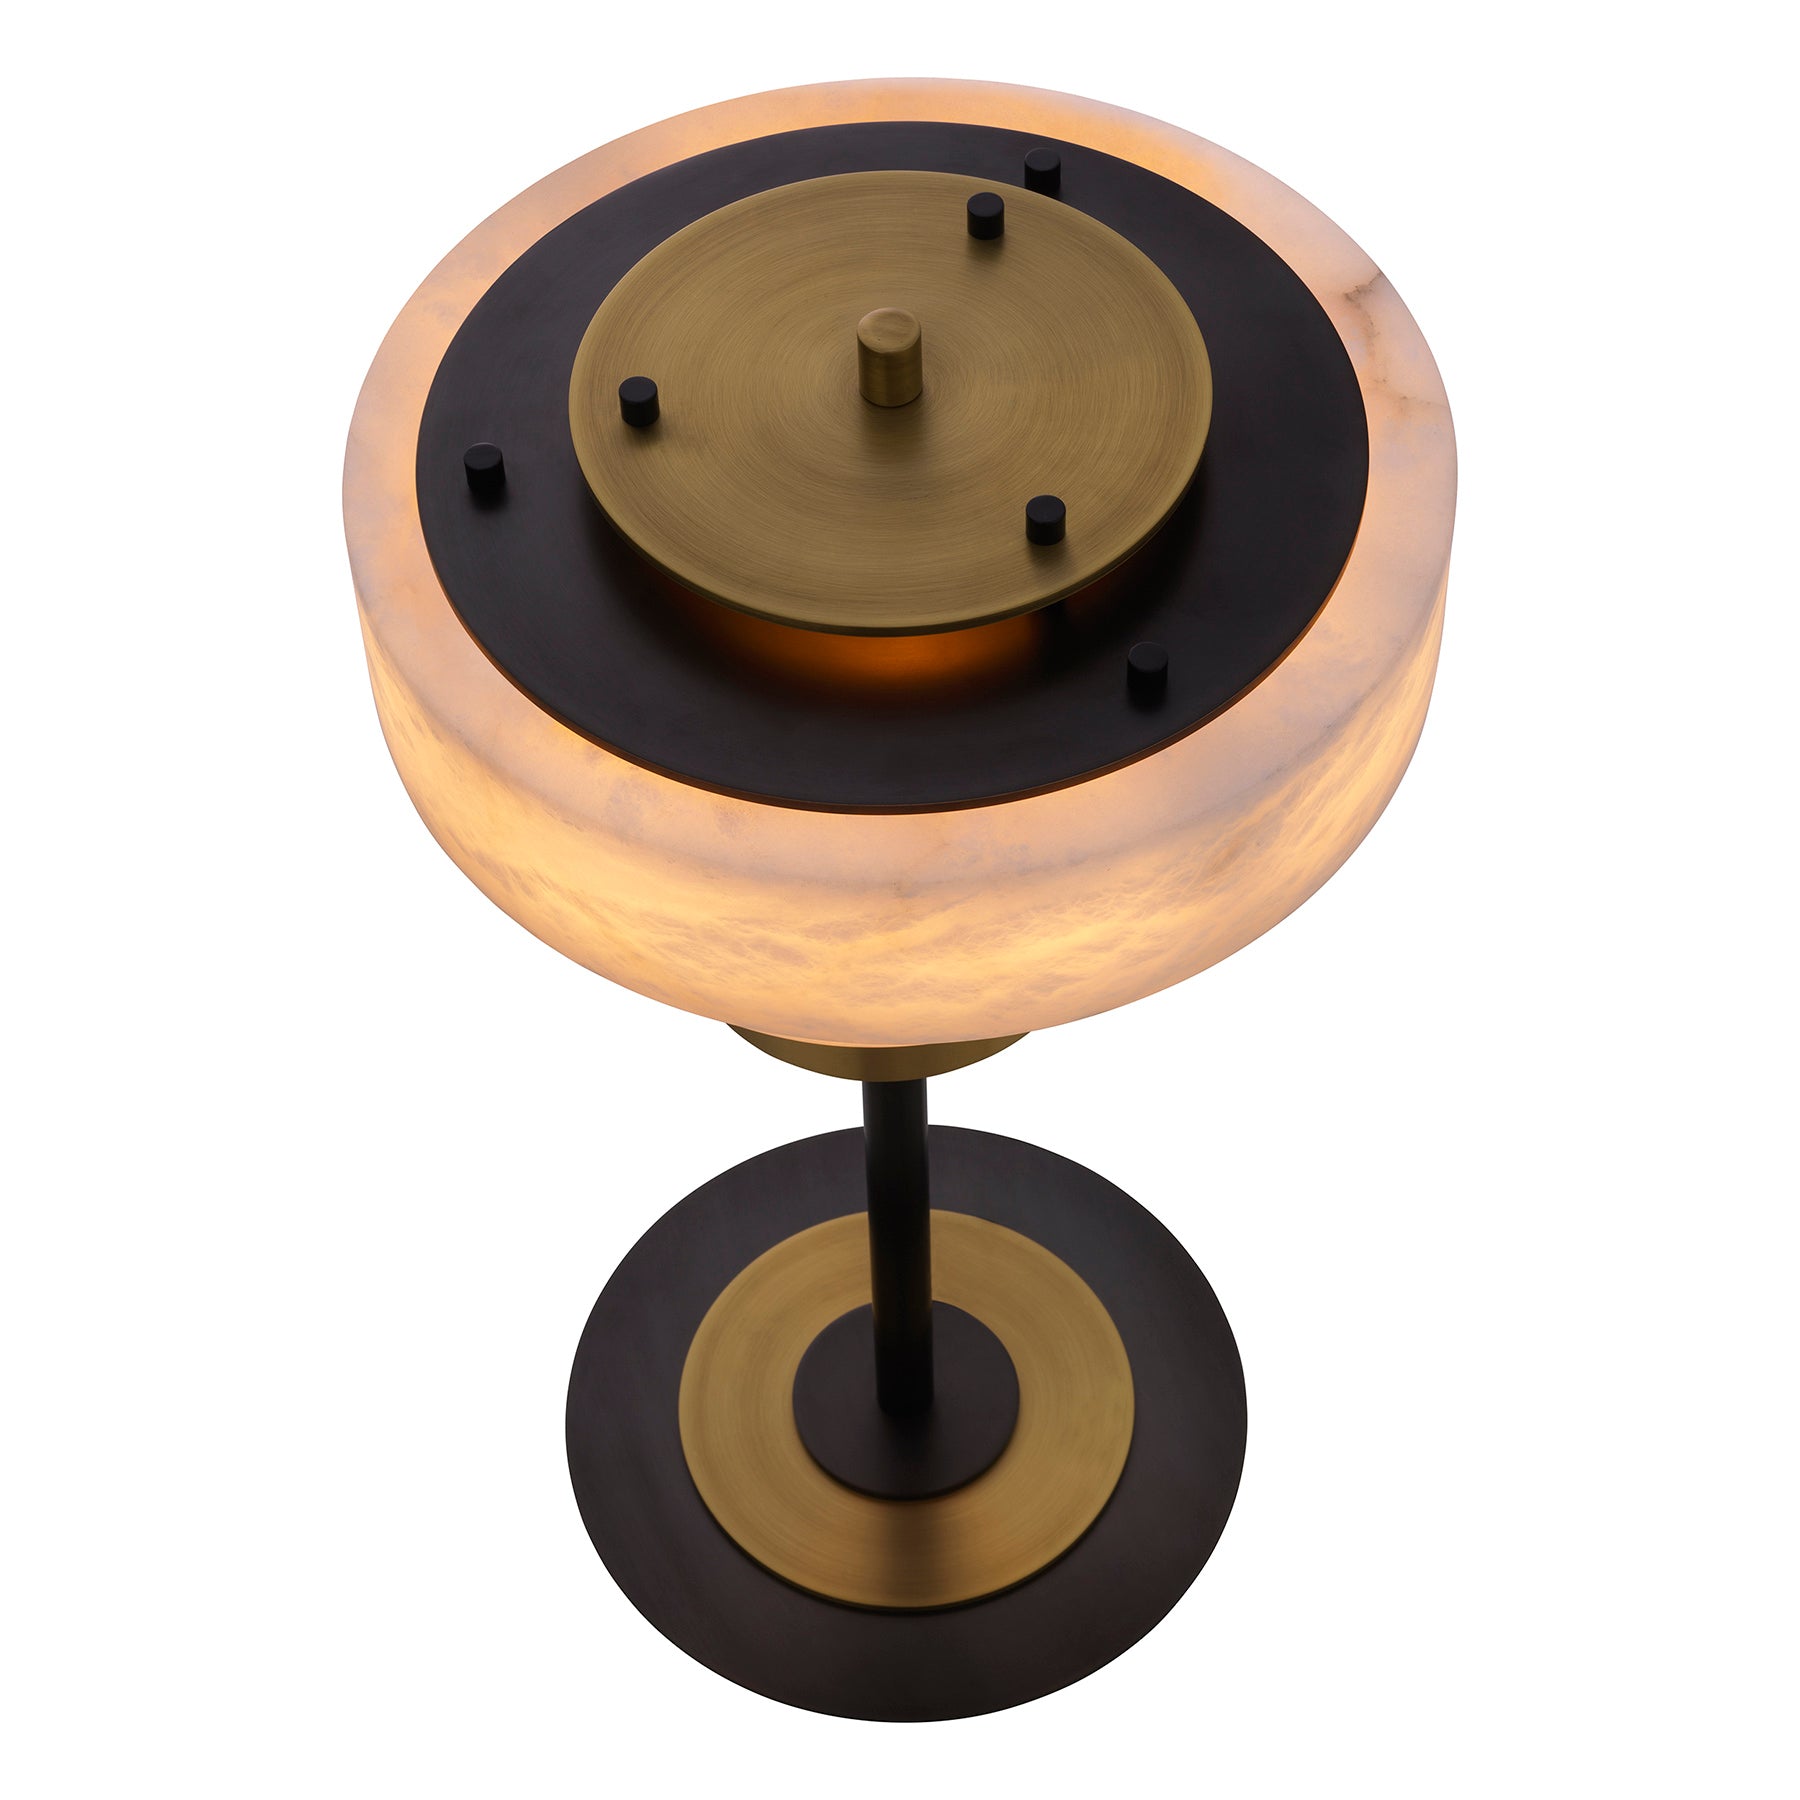 ZERENO - Table Lamp